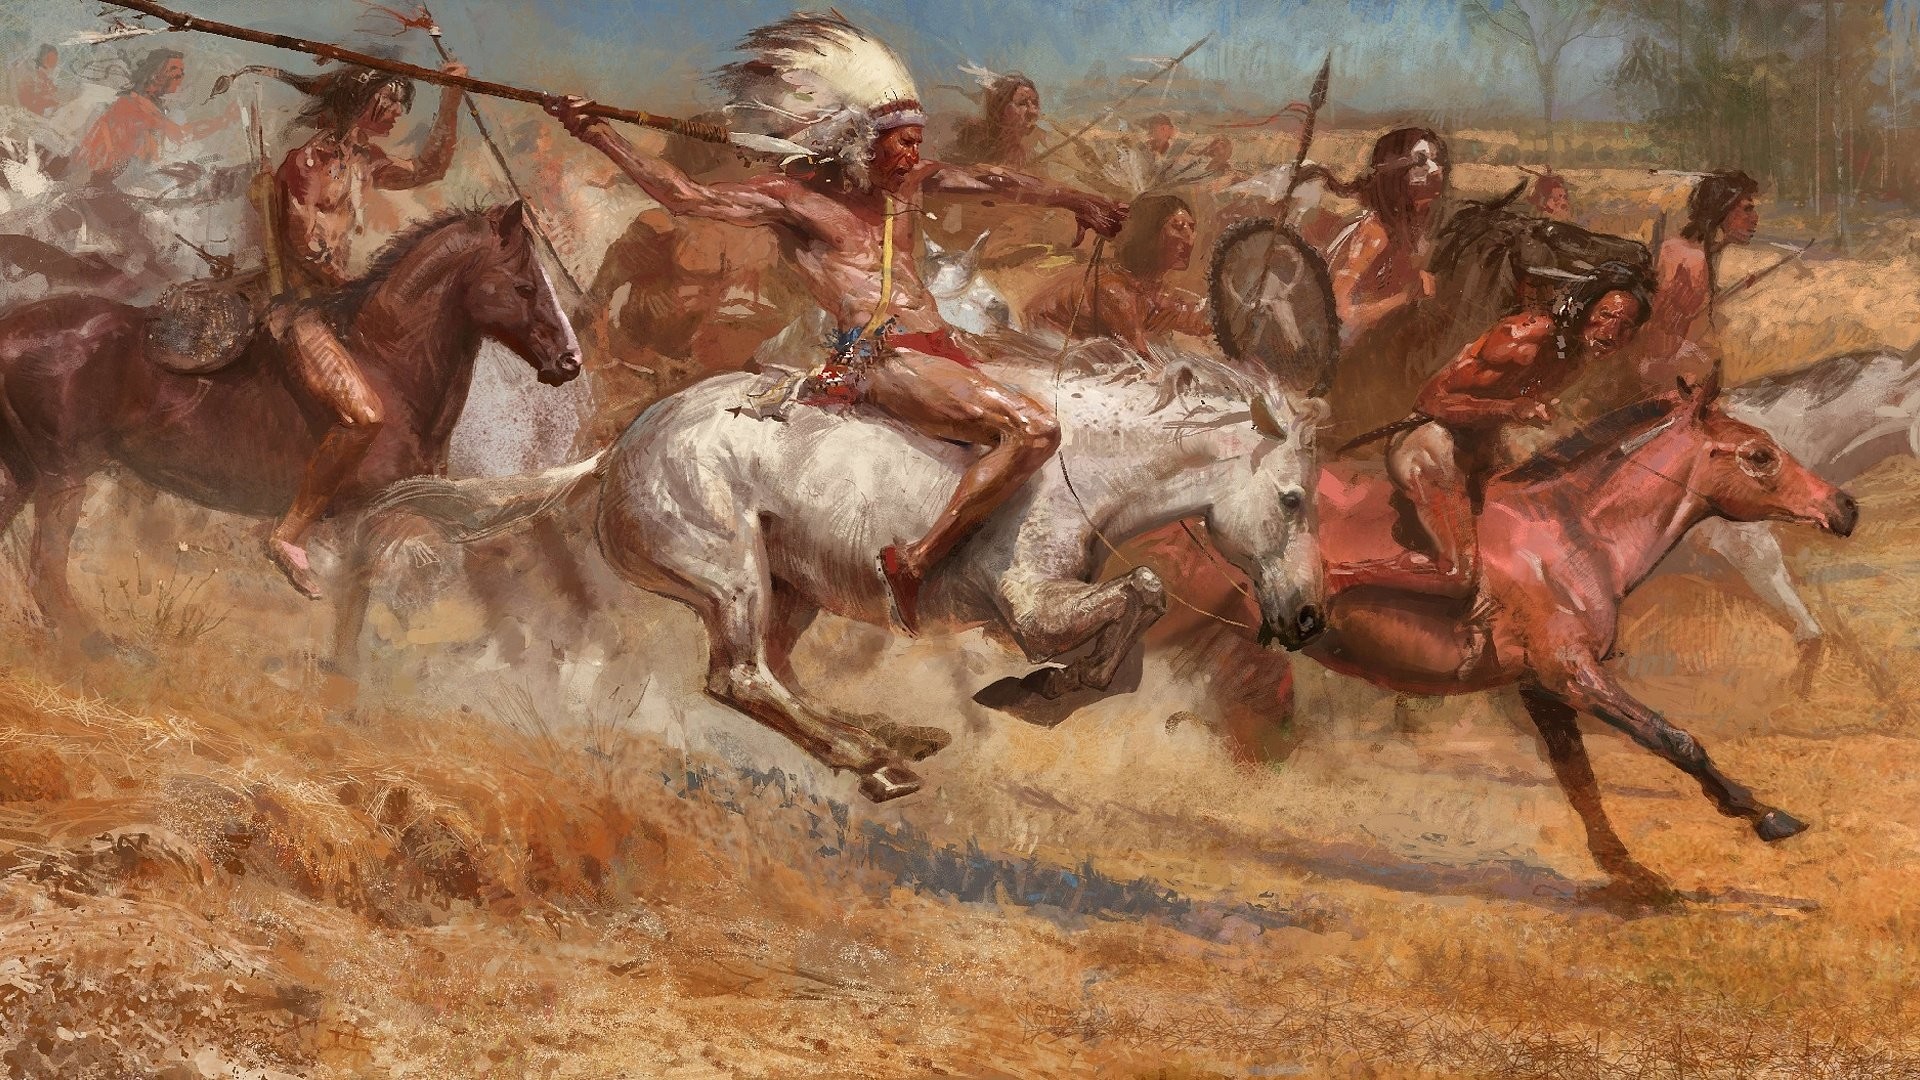 1920x1080 Wallpaper zu Age of Empires 3: The War Chiefs herunterladen